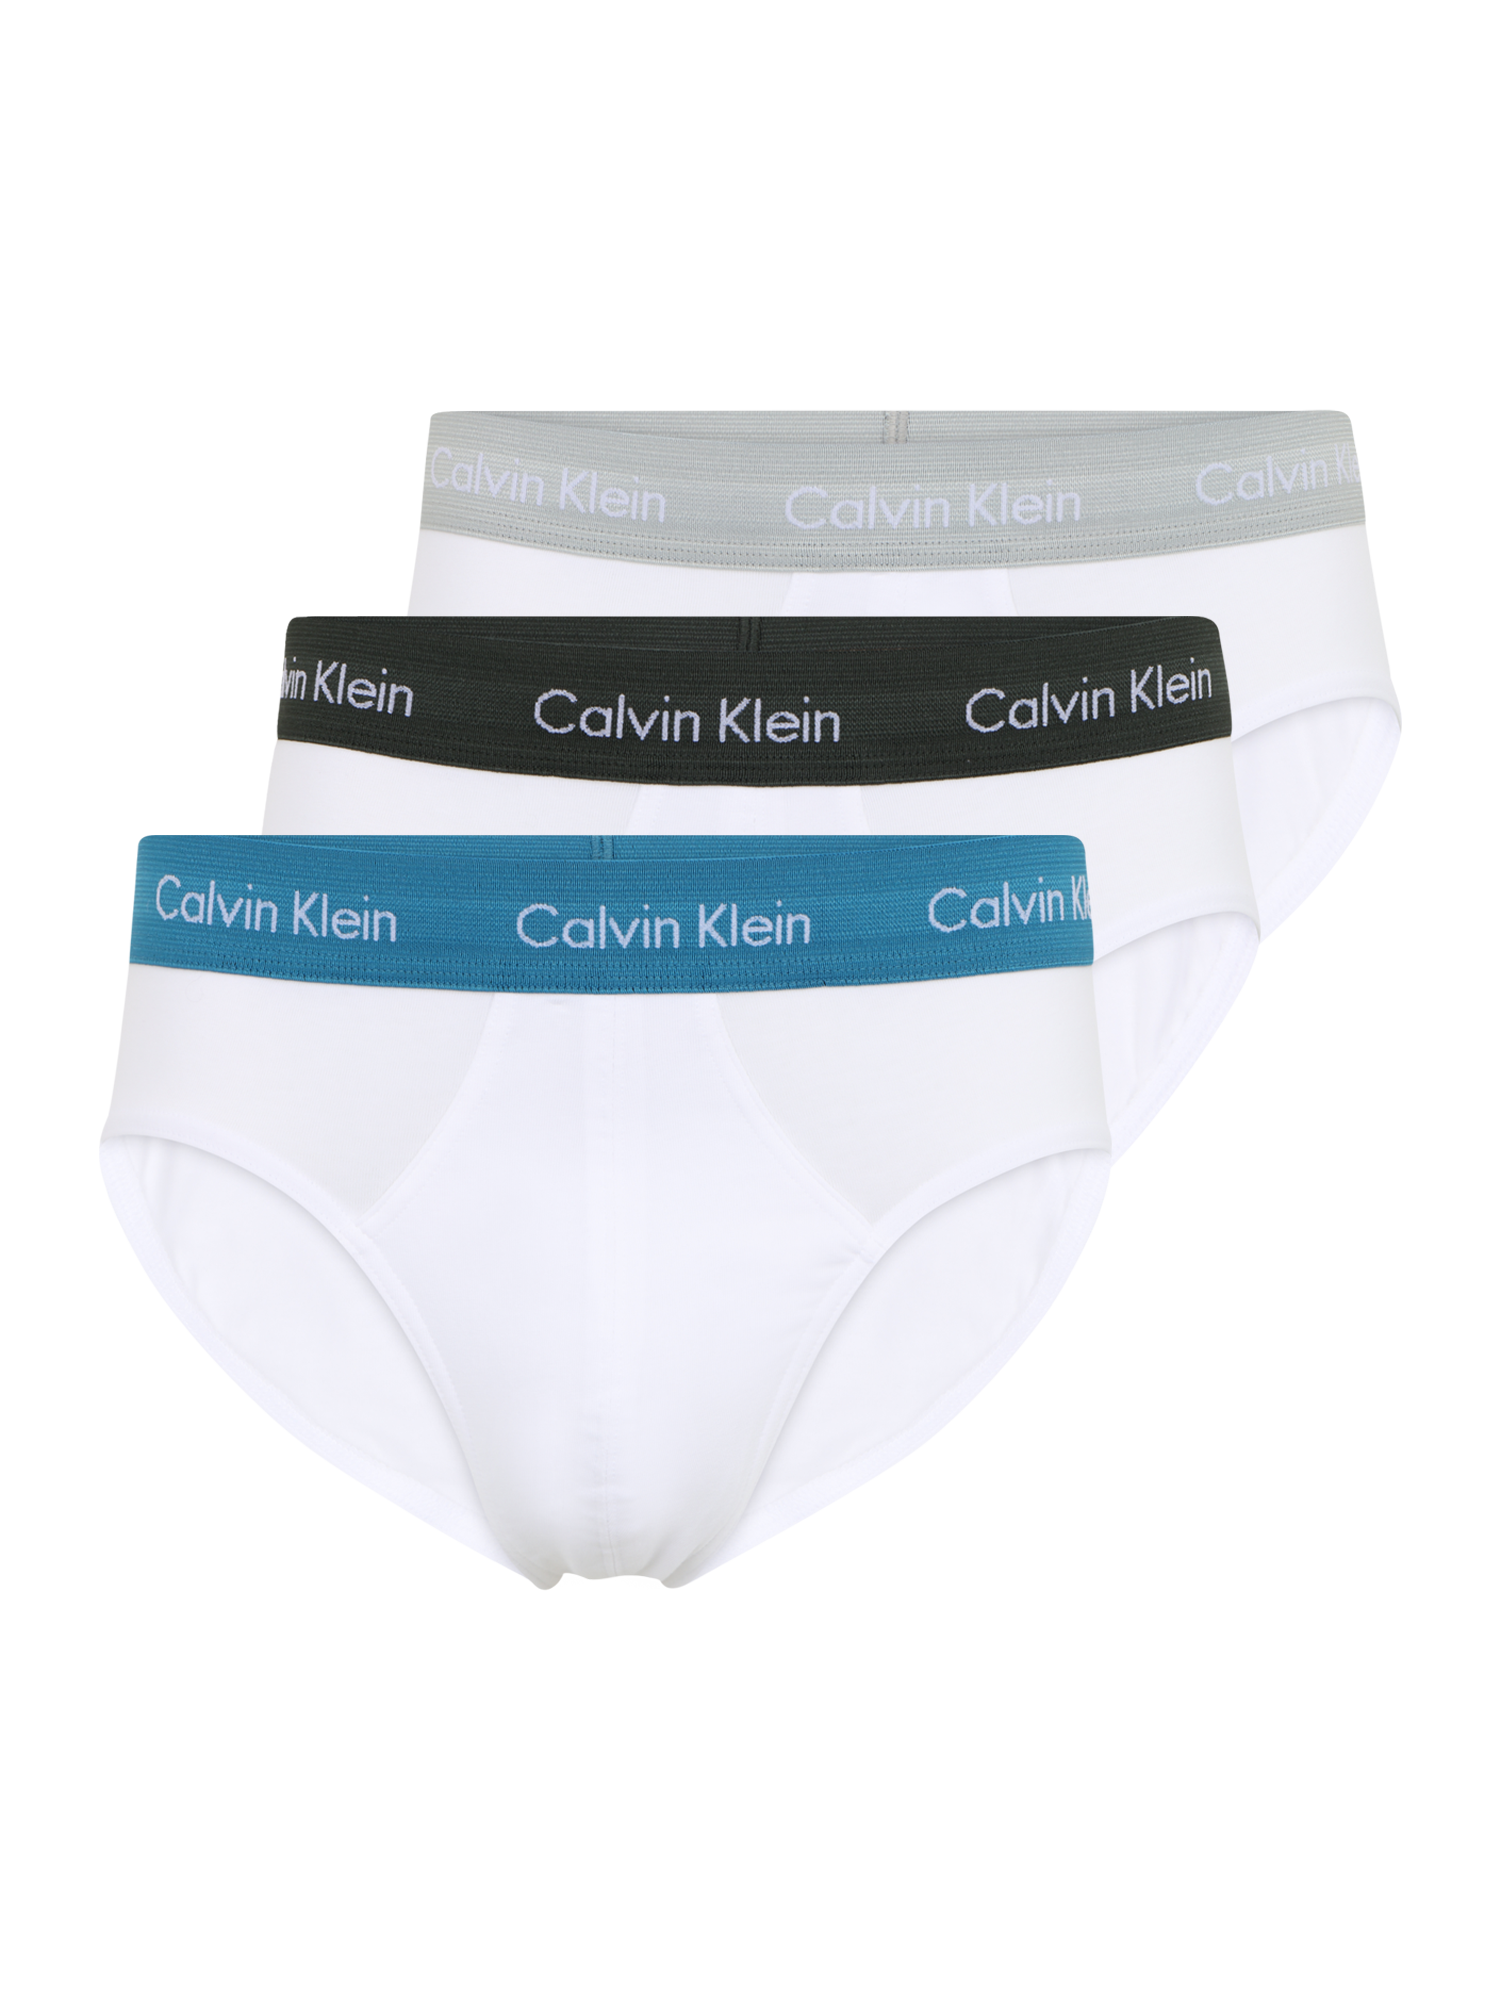 GAGw9 Intimo Calvin Klein Underwear Slip in Bianco 